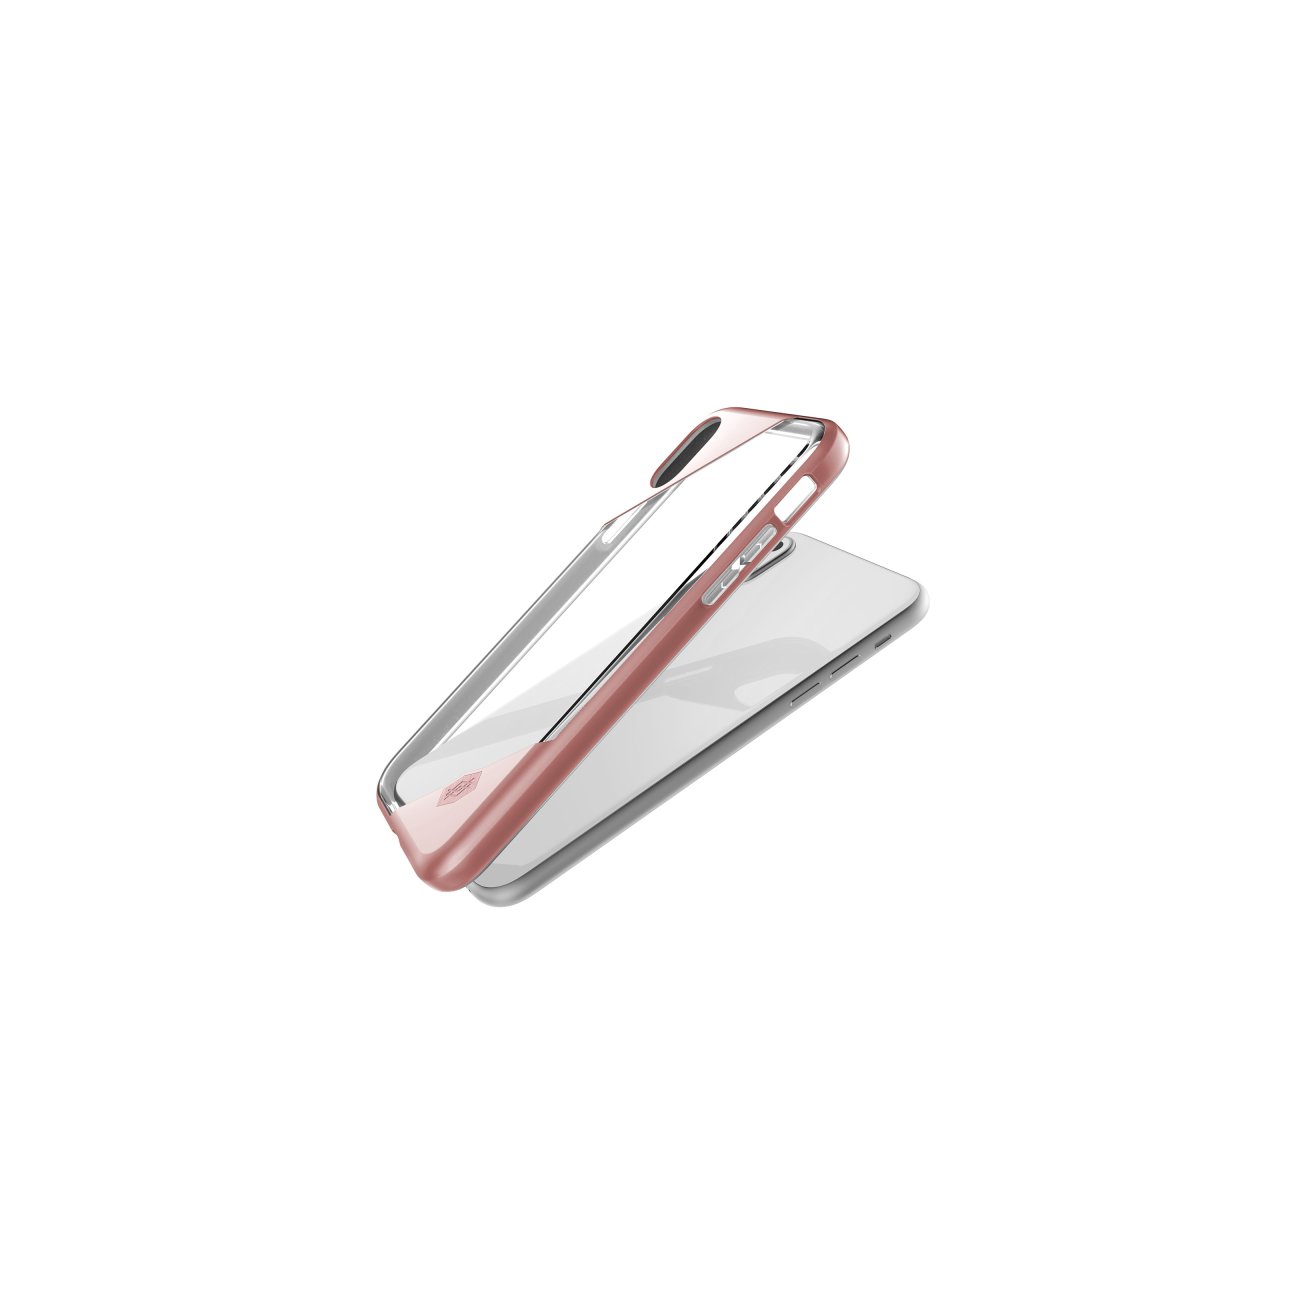 X-doria Apple iPhone X/iPhone XS Hard Case Revel Lux - 3X2C1055A | 6950941460910 - Rose Gold